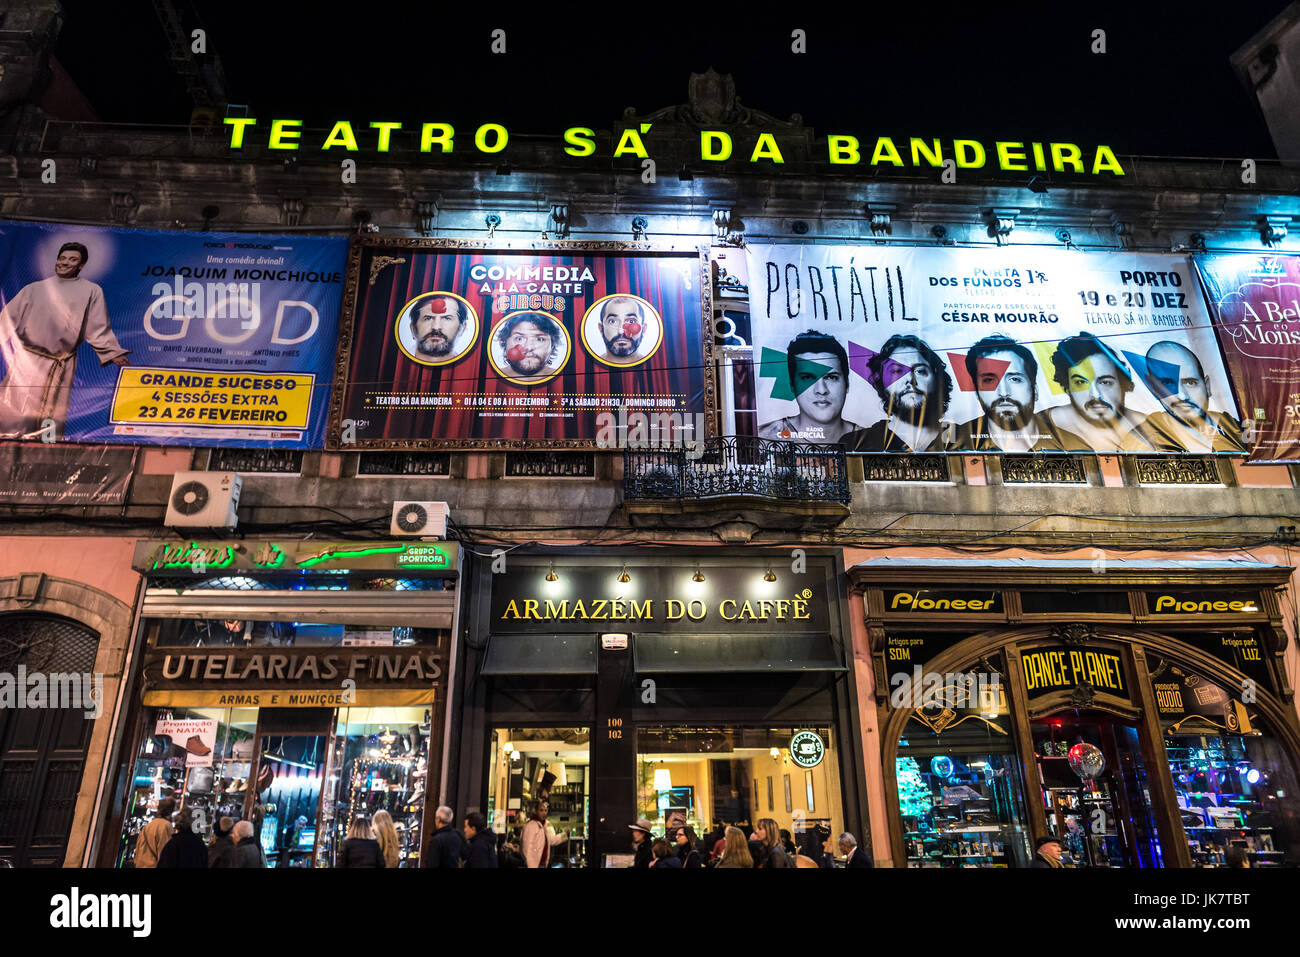 Sa da Bandeira teatro in Porto città sulla Penisola Iberica, la seconda più grande città in Portogallo Foto Stock